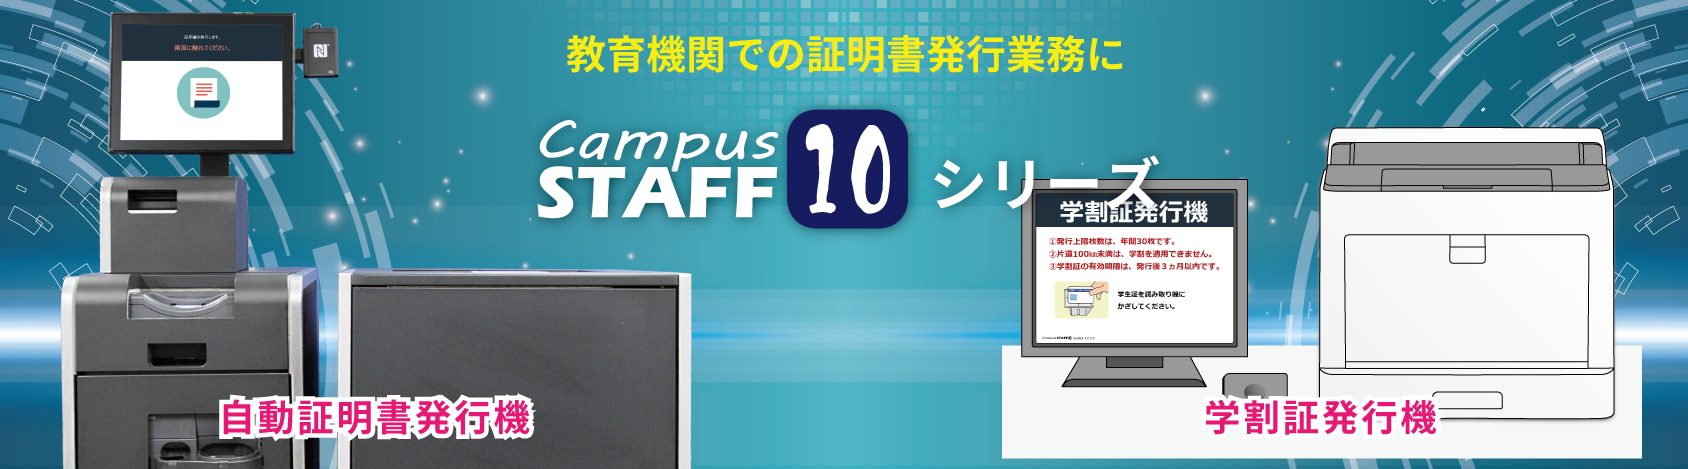 大学・教育機関での証明書発行業務にCampusSTAFF10シリーズ（自動証明書発行機・学割証発行機）